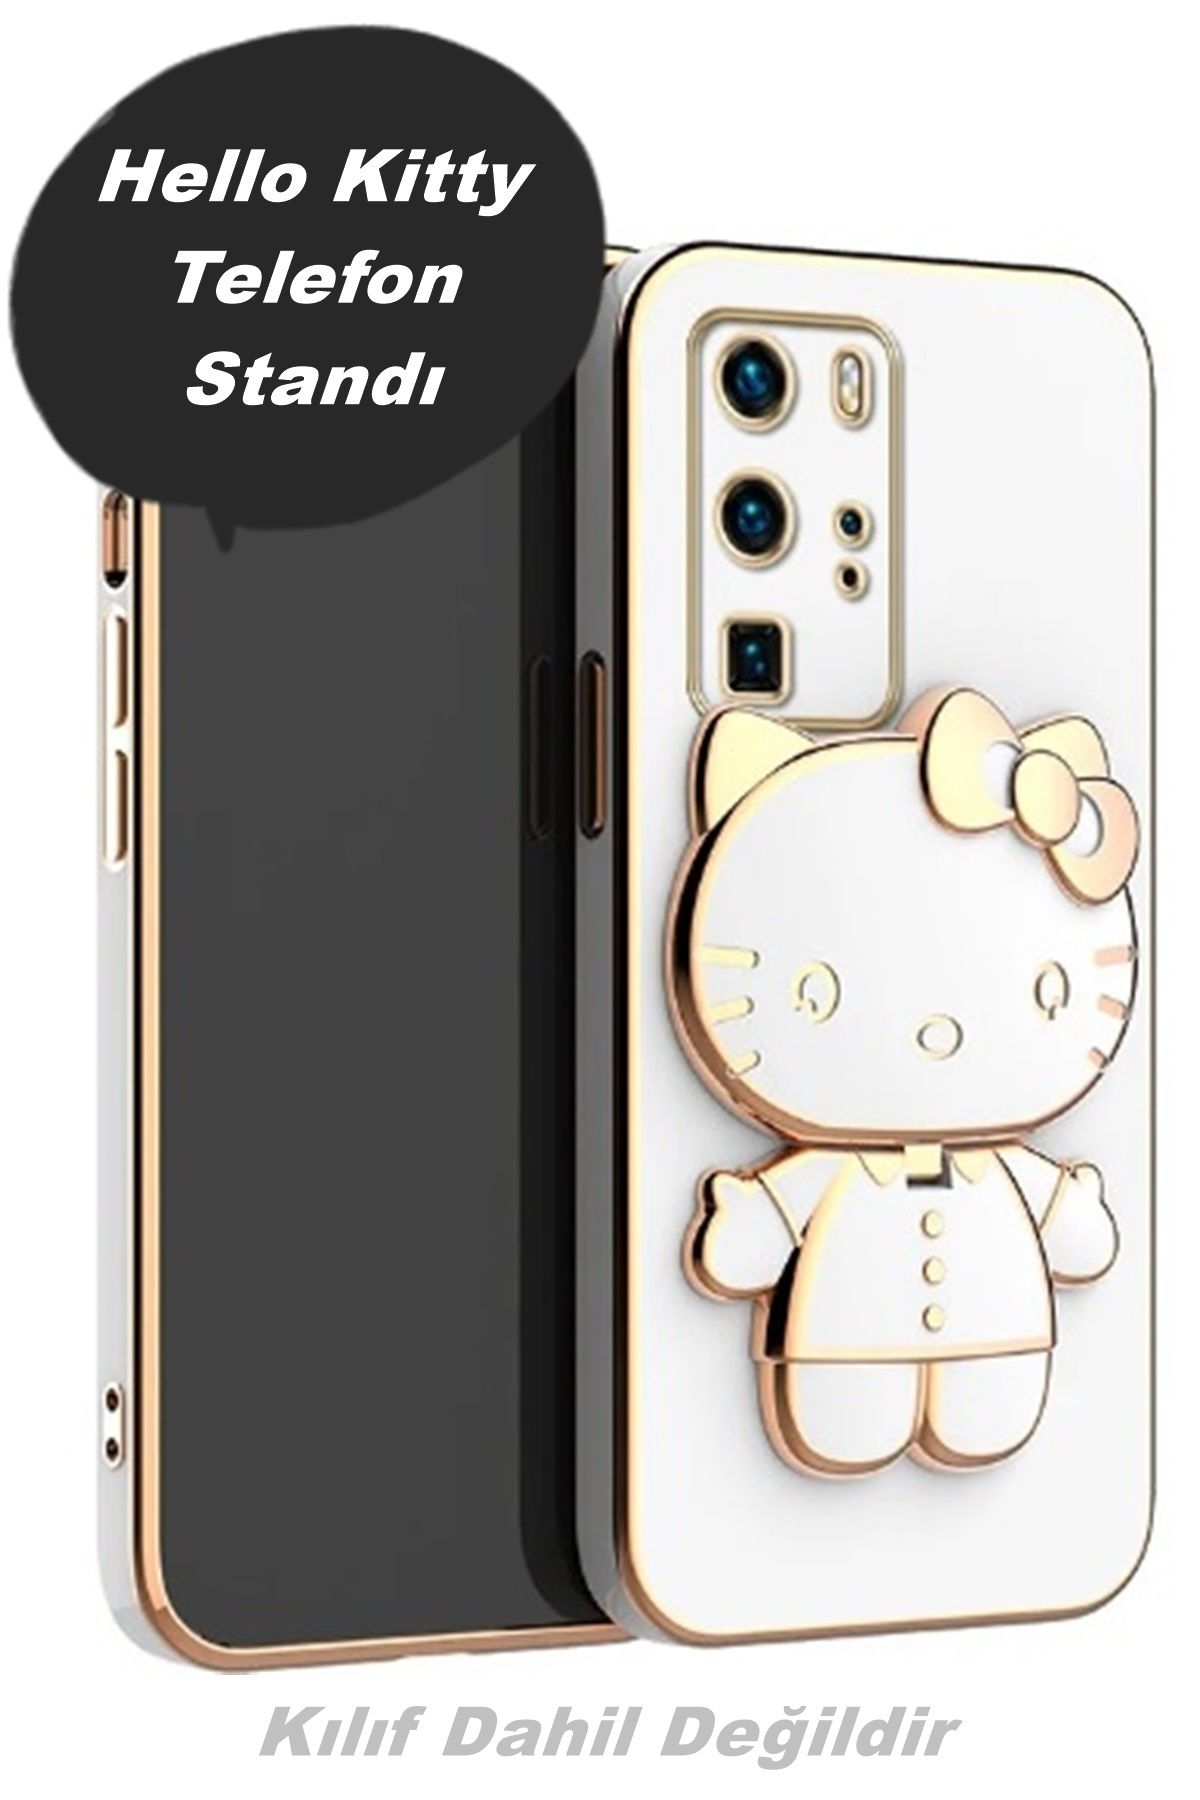 İndirimKap Hello Kitty Telefon Standı Aynalı  Yapışkanlı Telefon Kılıfına Yapıştırılır Kılıf Dahil Değildir